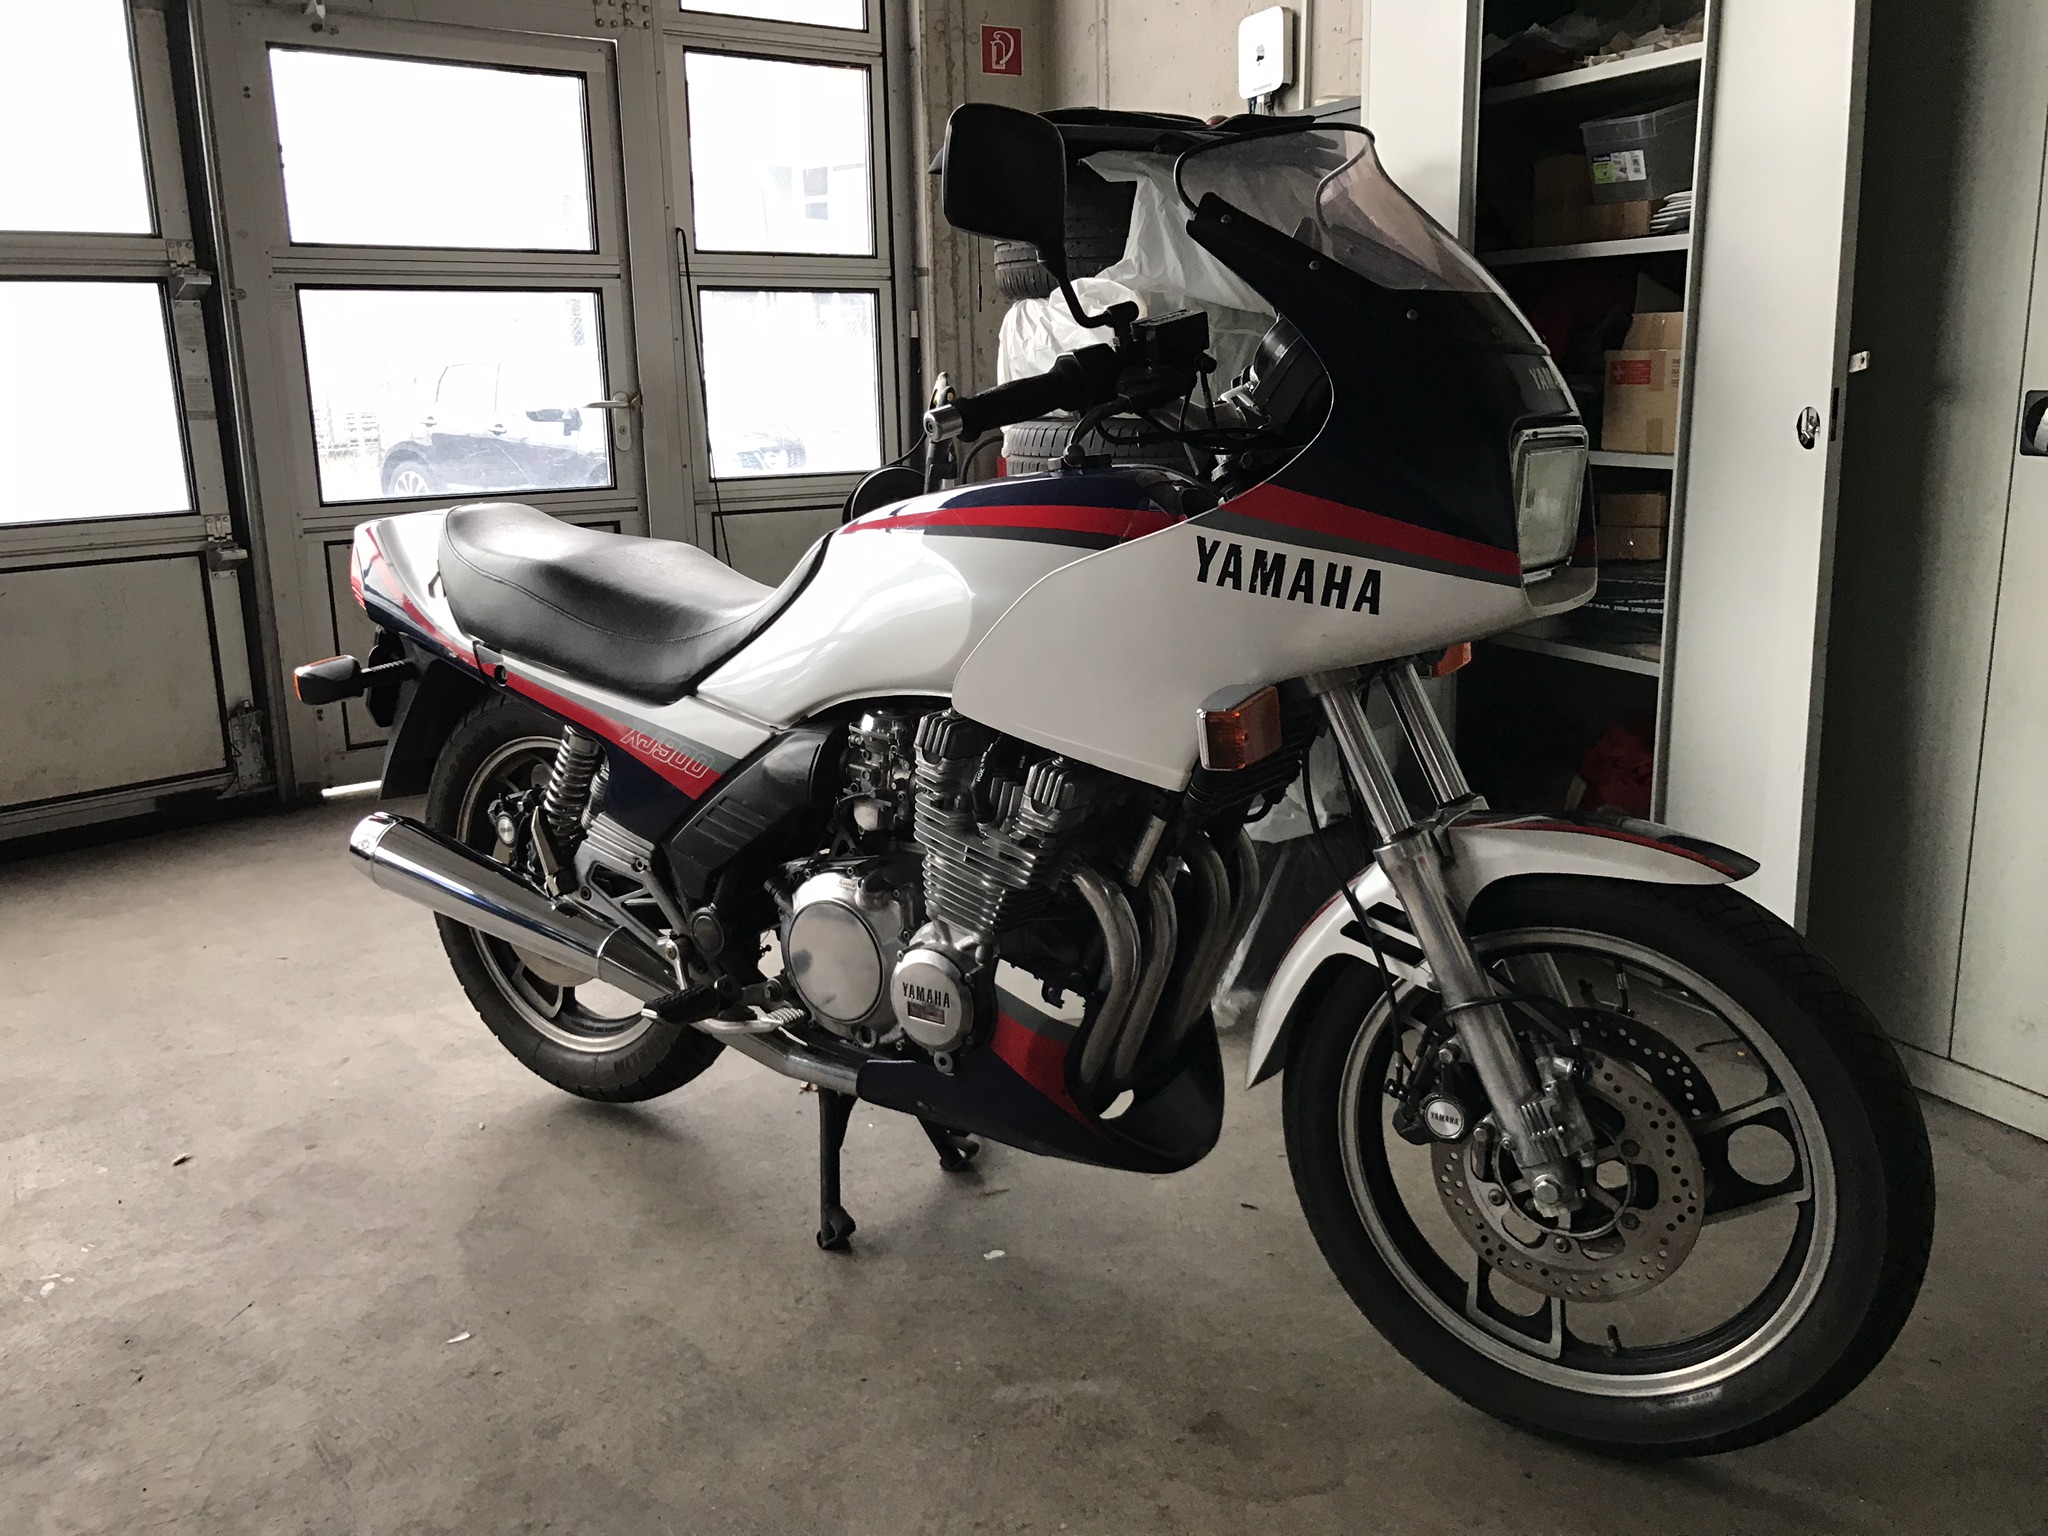 1984 Yamaha XJ 900 31a - Cafe Racer Conversion